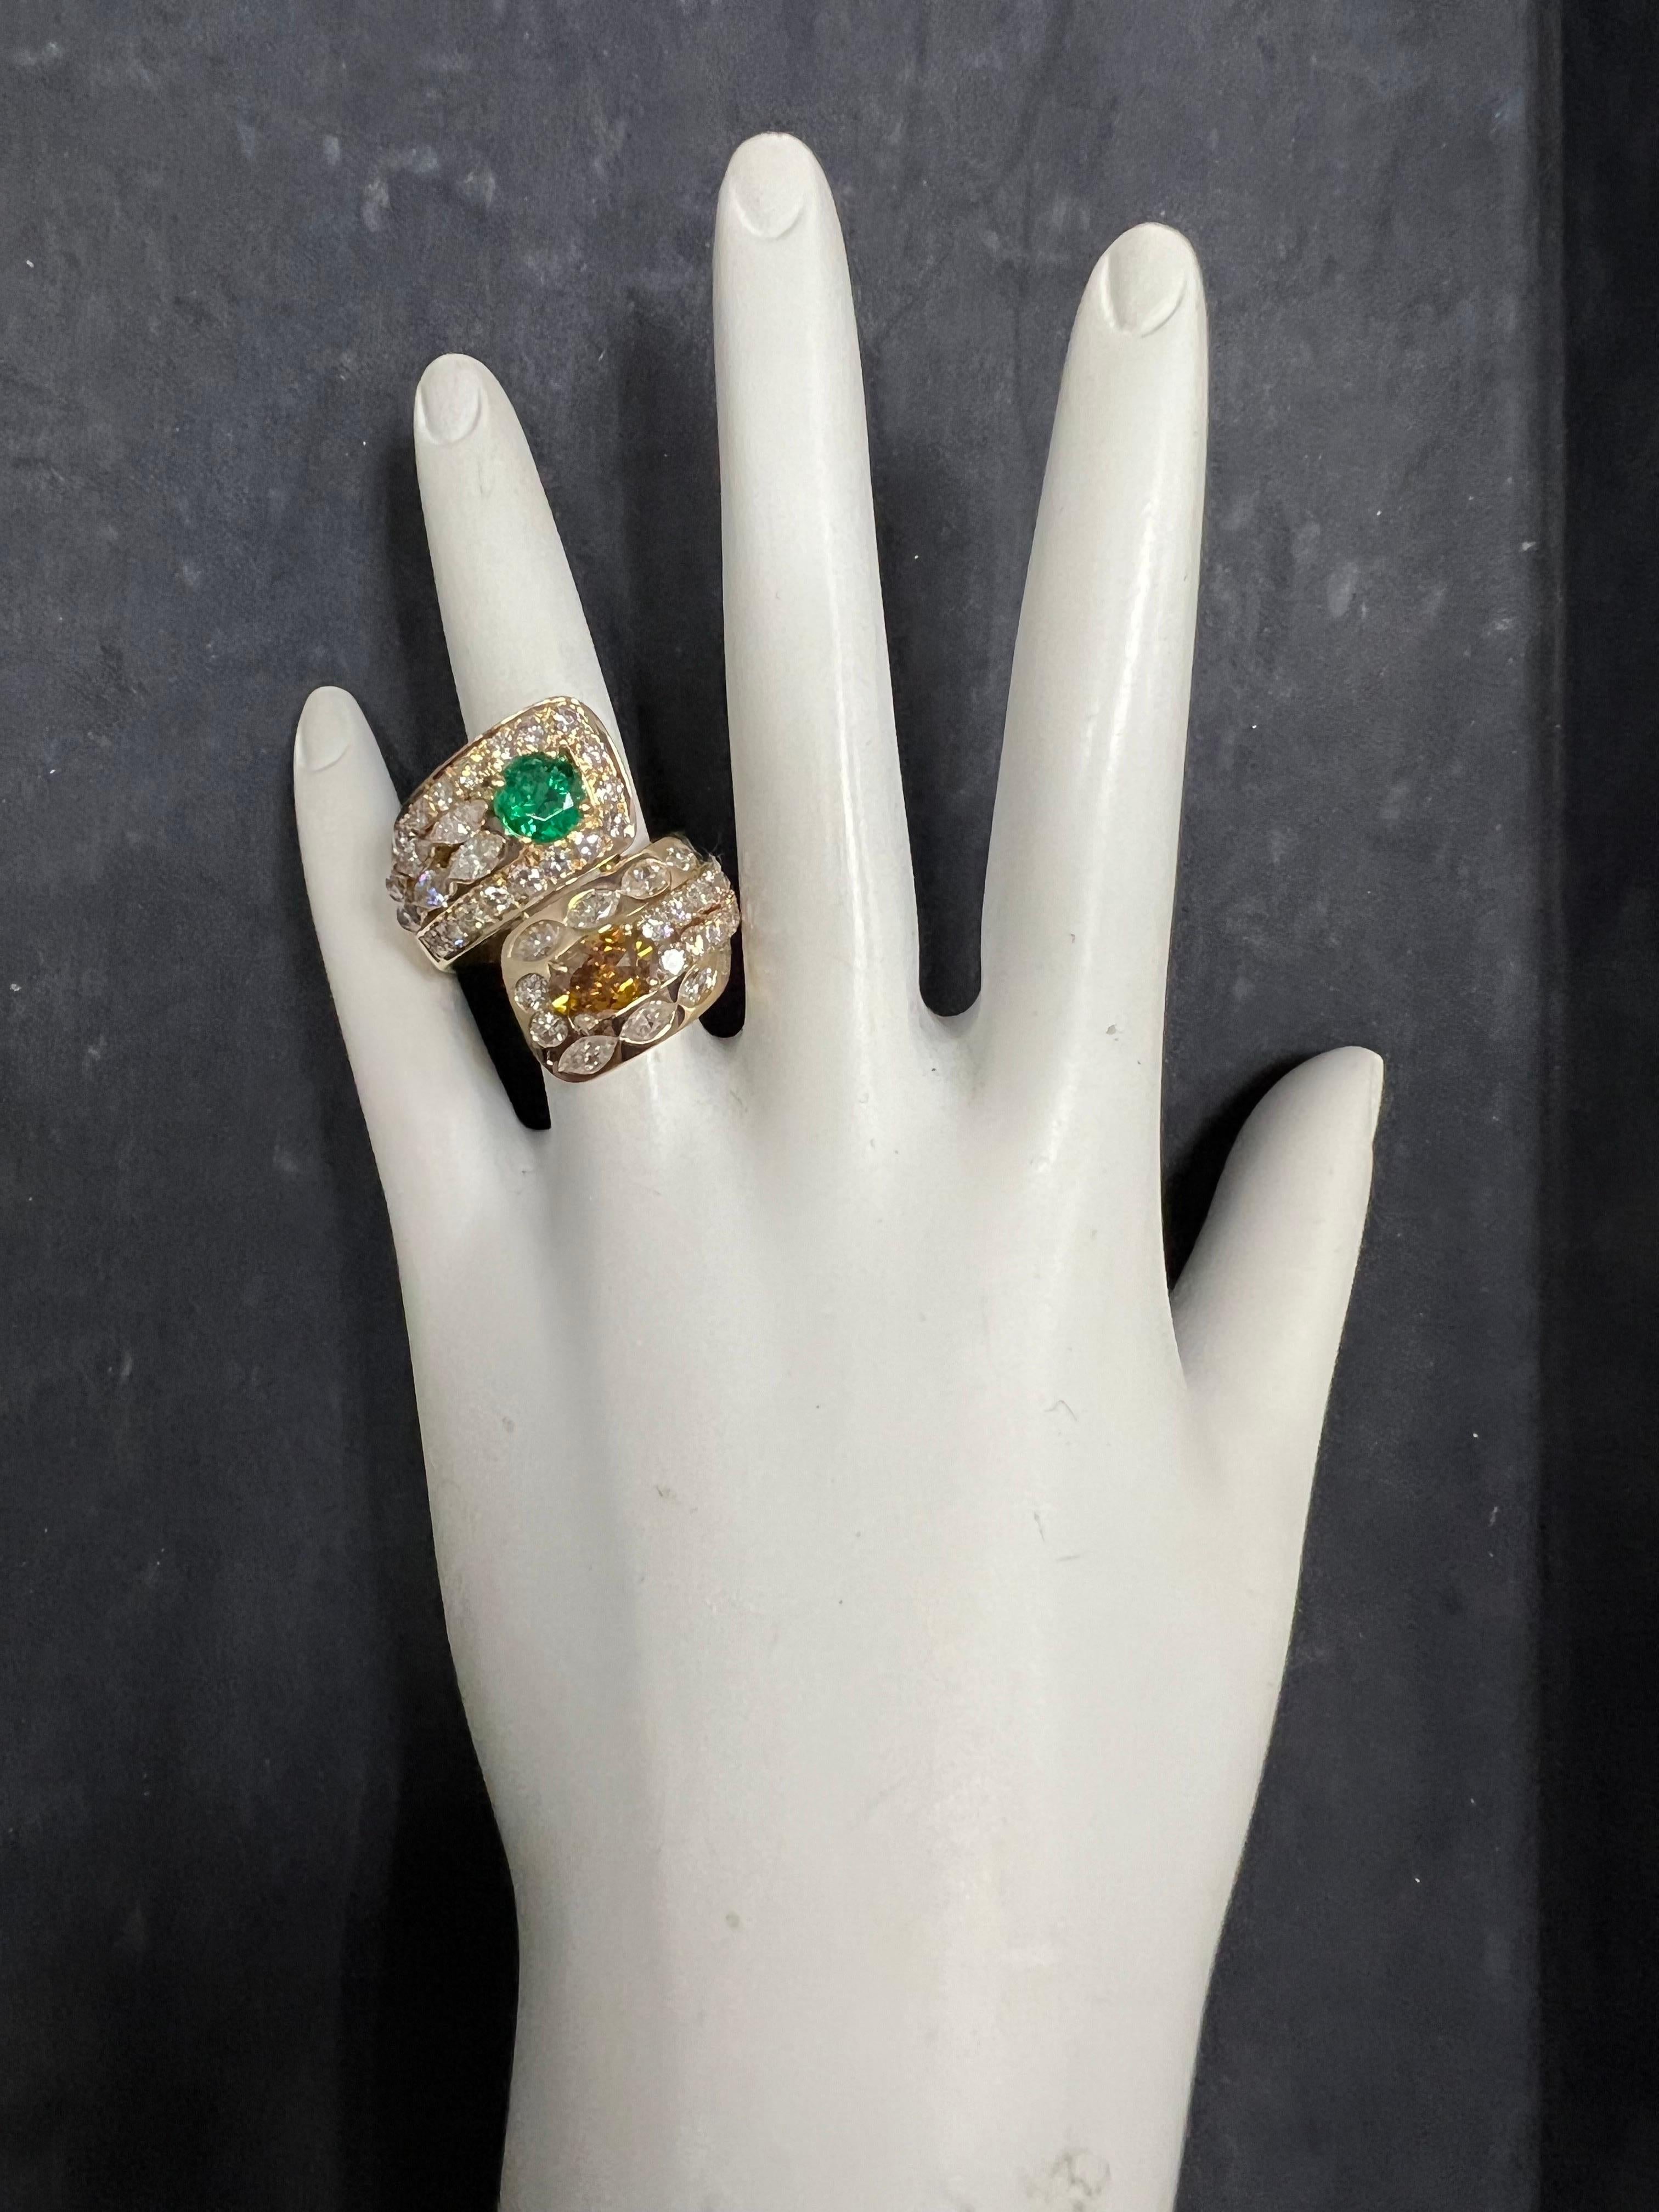 Retro 18k Gelbgold GIA zertifiziert 7,4 ungefähre Karat natürlichen Smaragd & Diamond Cocktail Ring 1960.

Der Ring ist mit zwei natürlichen GIA-zertifizierten Edelsteinen. Der erste ist ein natürlicher 1,01 Karat Oval Brillant Fancy Deep Brownish